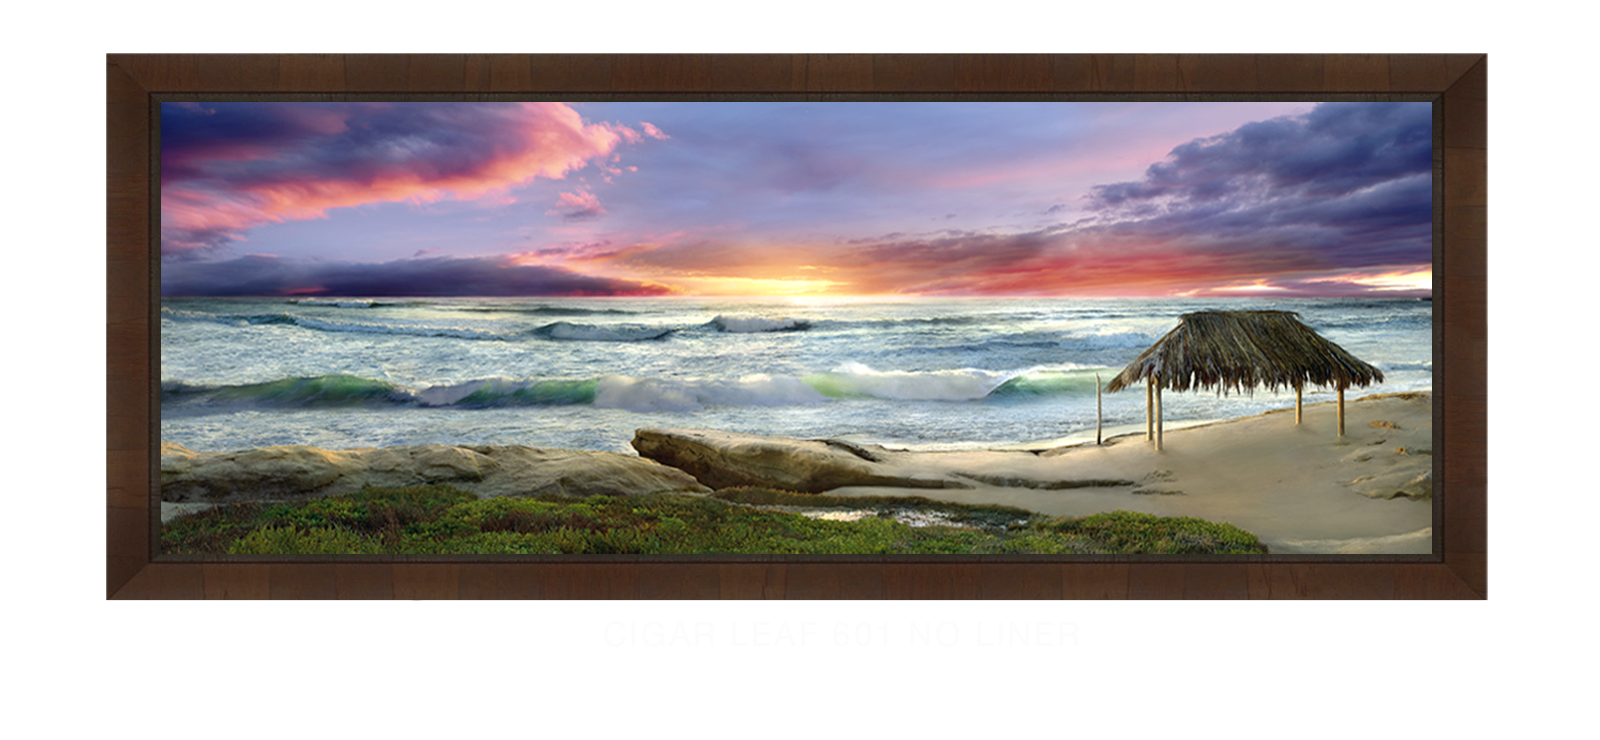 31AWAITANCE Cigar Leaf 601 w_No Liner T